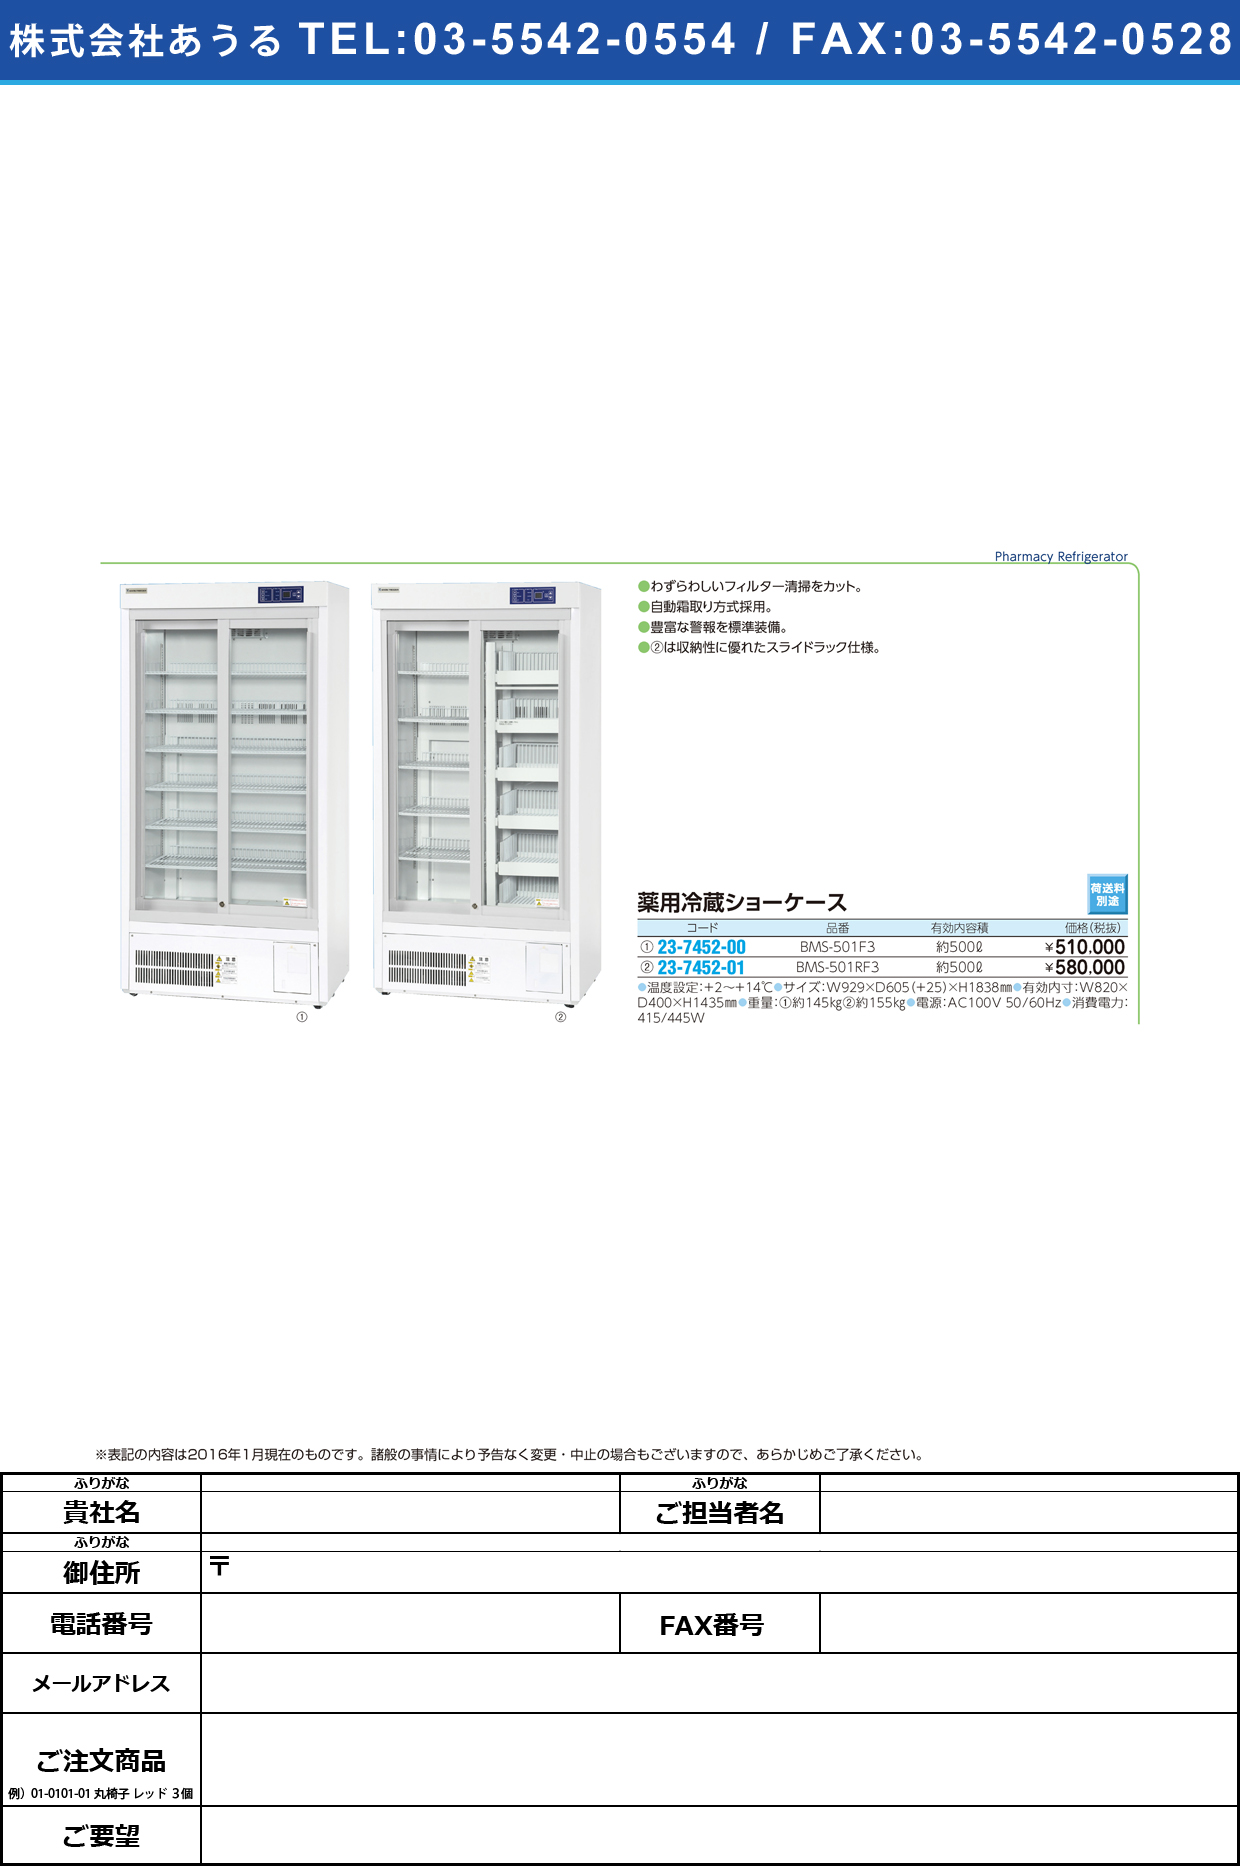 薬用冷蔵ショーケース（網棚仕様）   ﾔｸﾖｳﾚｲｿﾞｳｼｮｰｹｰｽ BMS-501F3【1台単位】(23-7452-00)